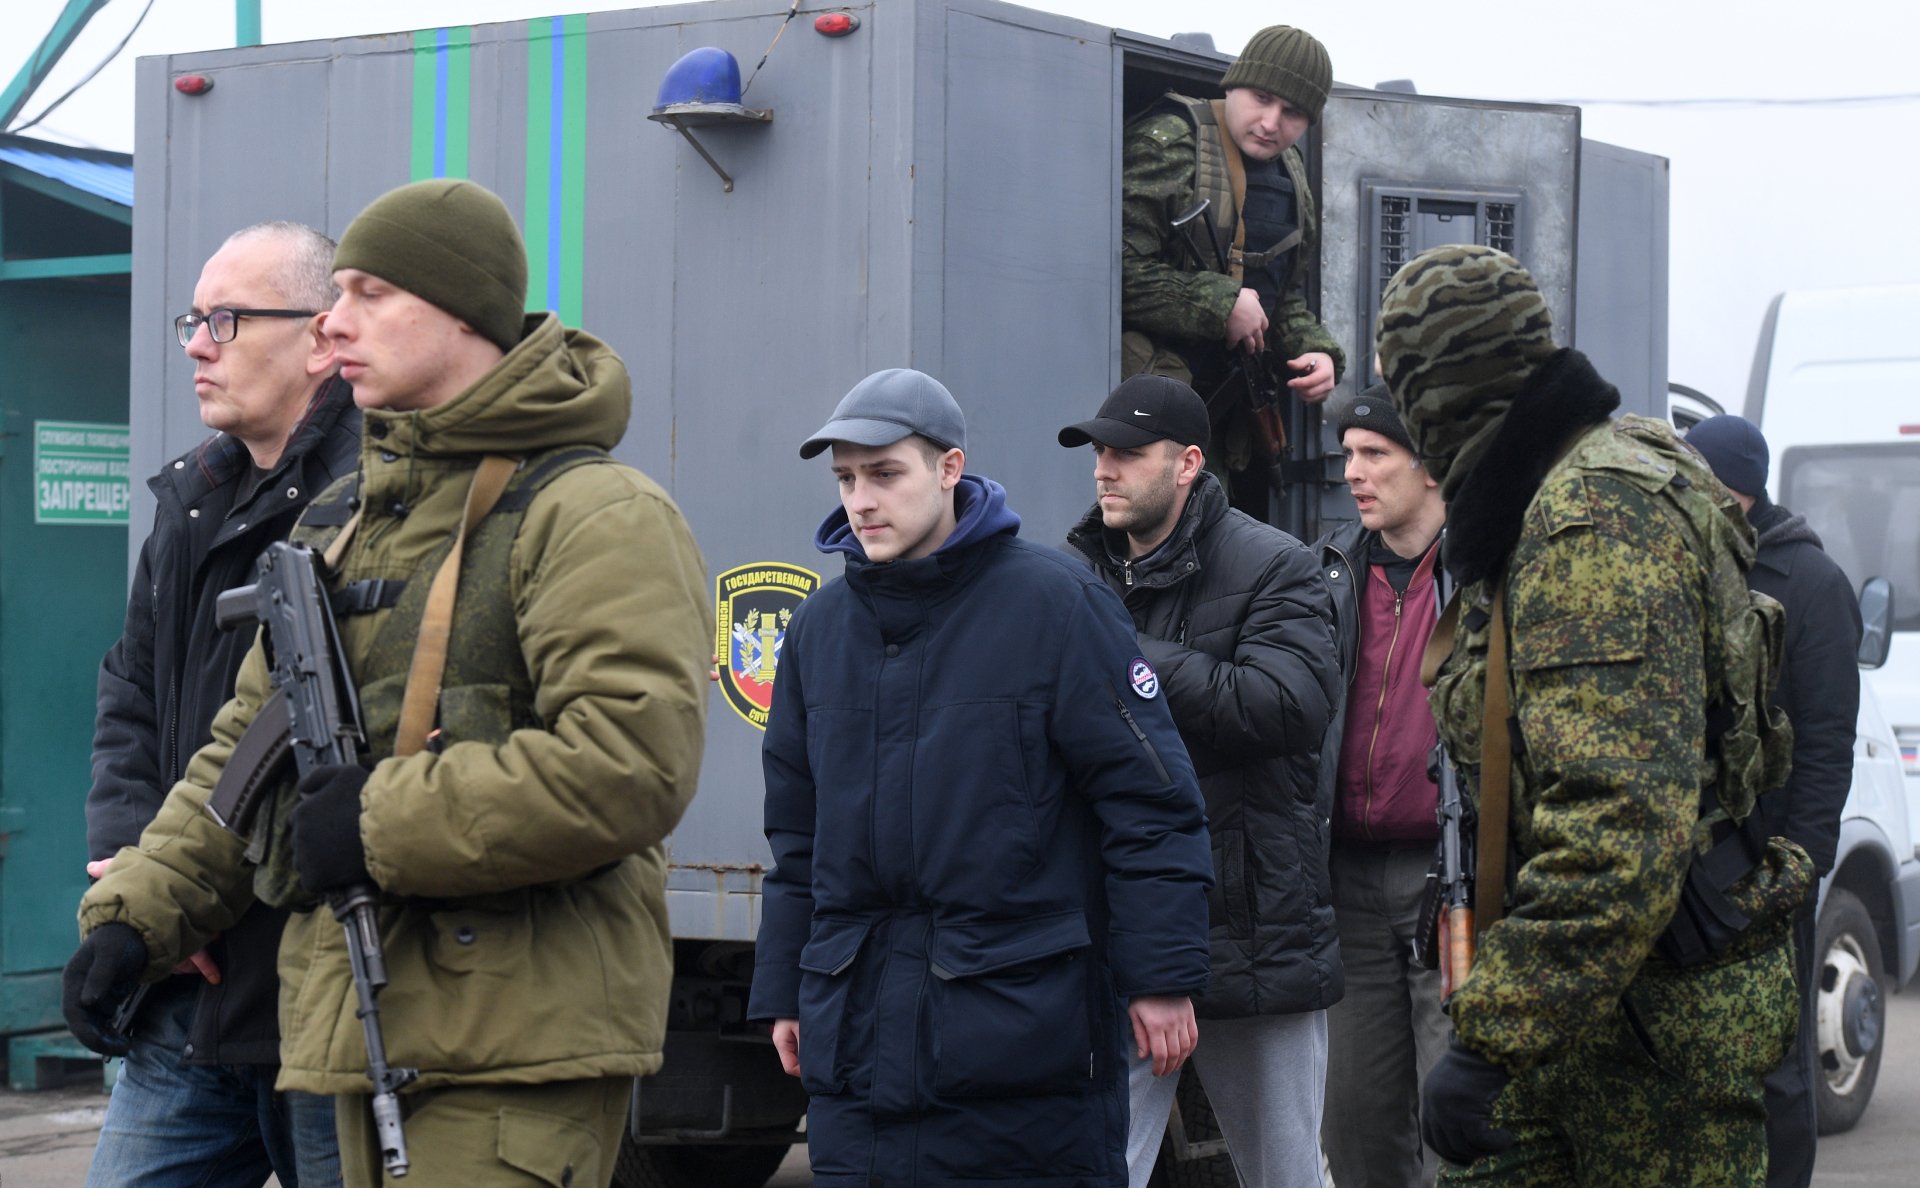 Новости украины сегодня свежие донбасса. Обмен пленными в Донбассе.